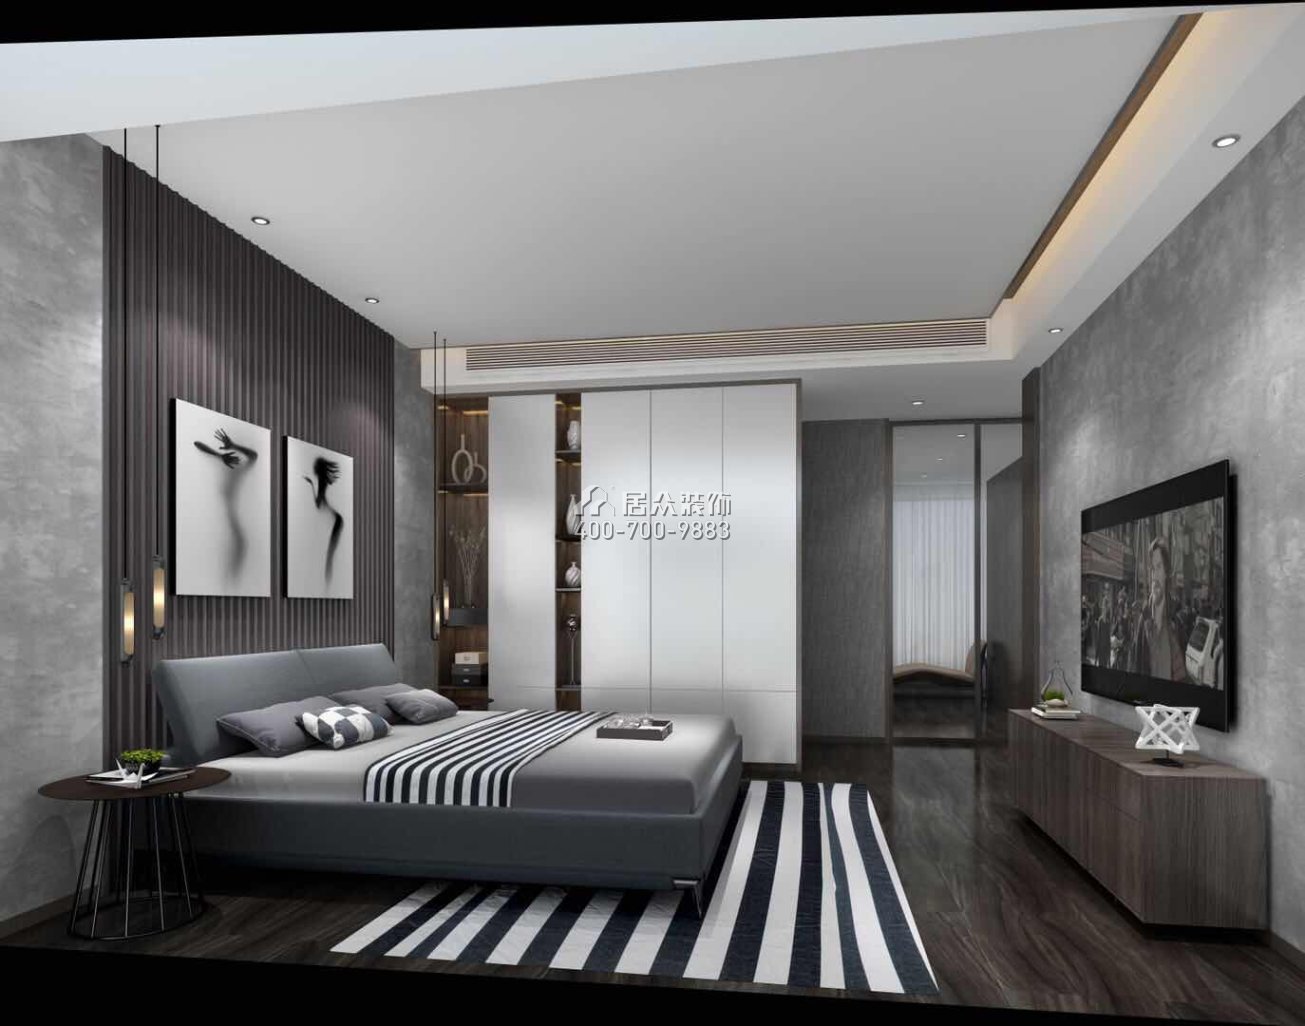 香山里花园一期179平方米现代简约风格平层户型卧室装修效果图